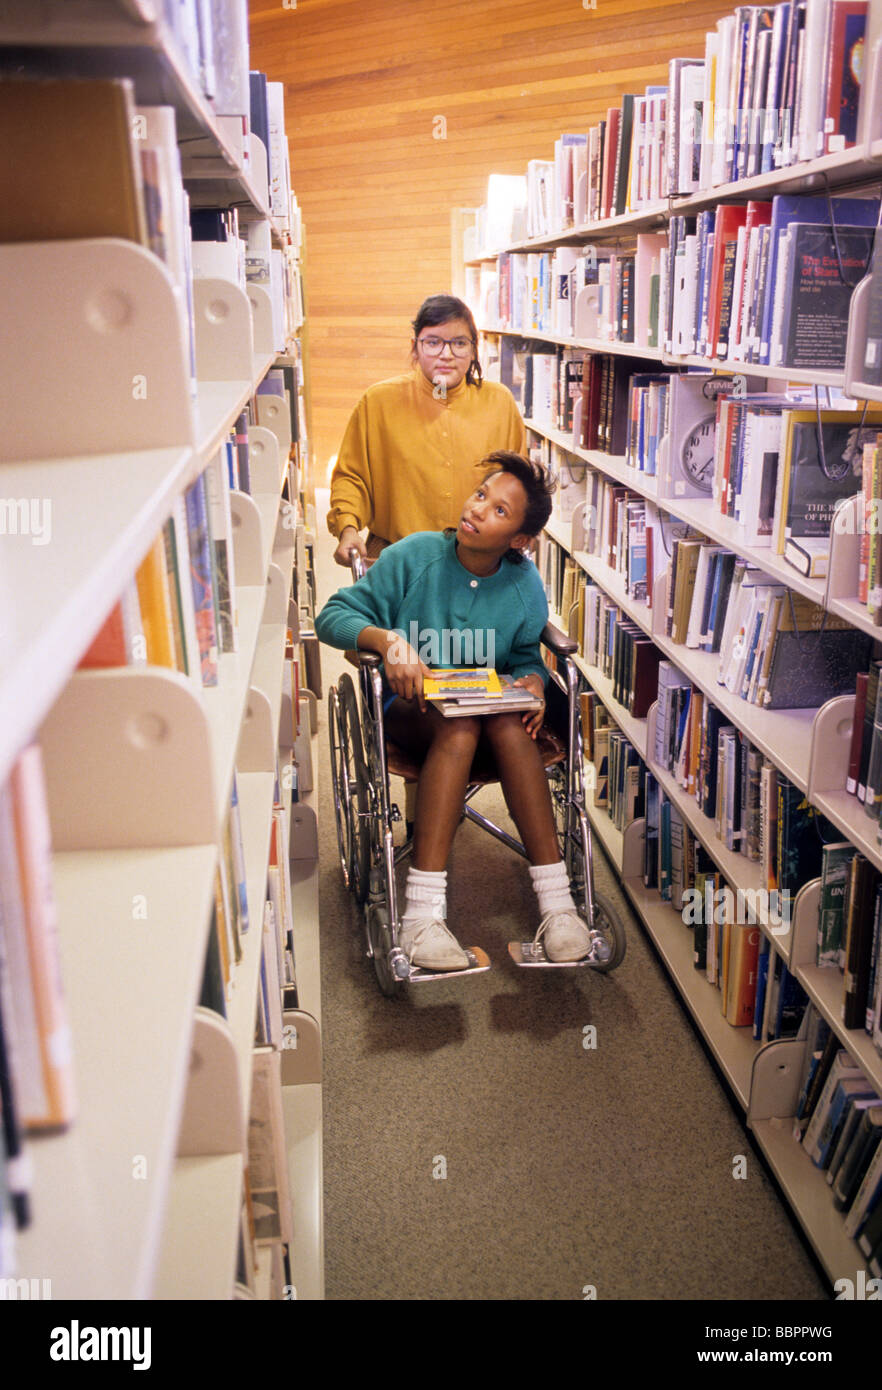 Rollstuhl Rollstuhl Handicap Mädchen Bibliothek Freund Hilfe Unterstützung helfen Buch finden wählen Sie in der Lage deaktivieren auswählen Stockfoto